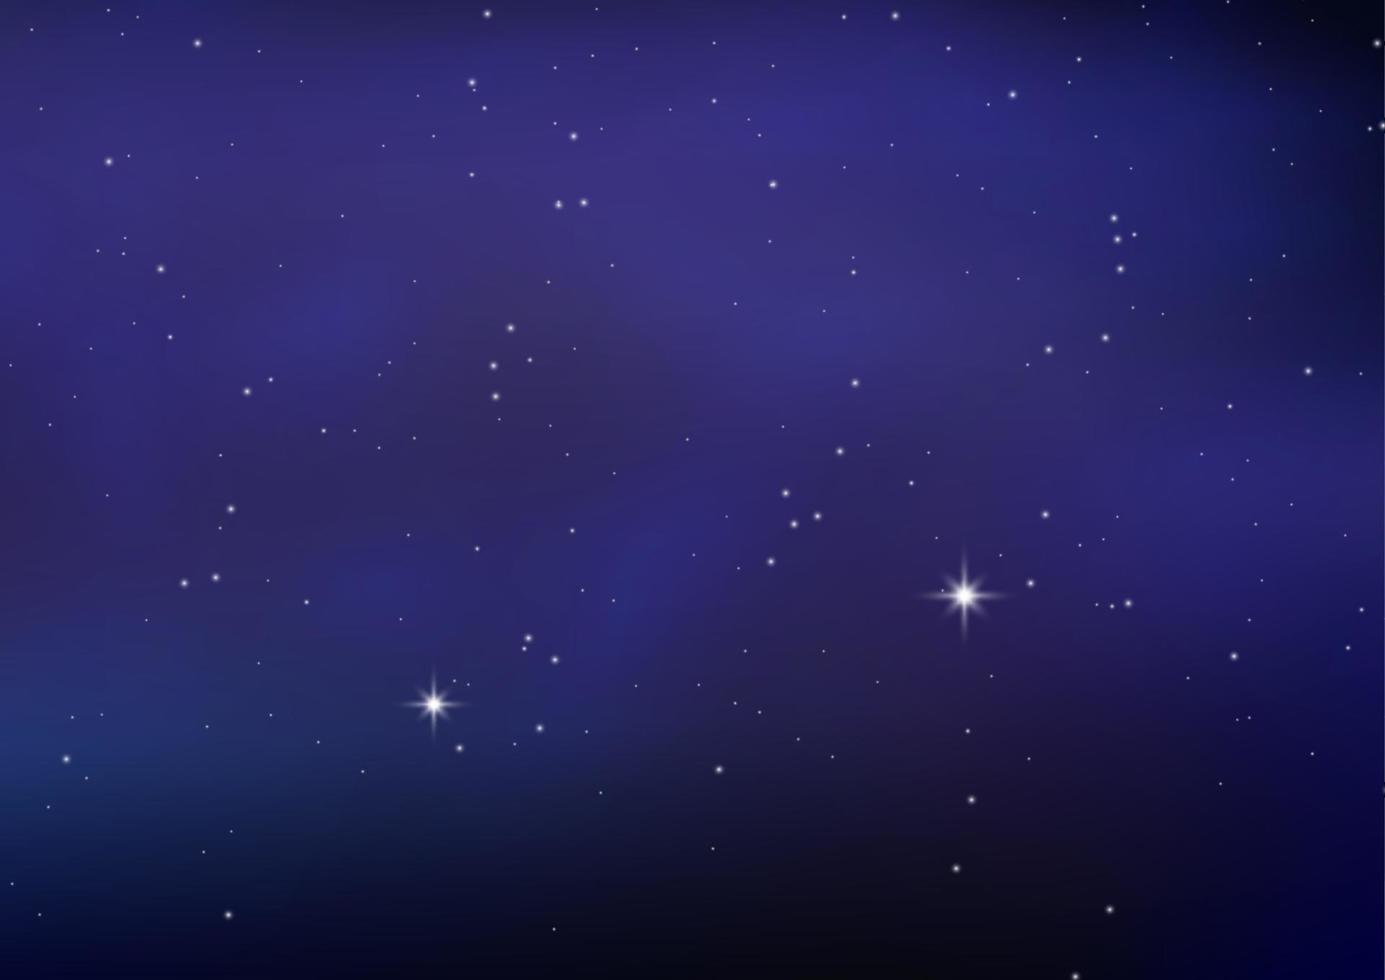 nacht schijnend sterrenhemel lucht, blauw ruimte achtergrond met sterren, ruimte. mooi nacht lucht. vector